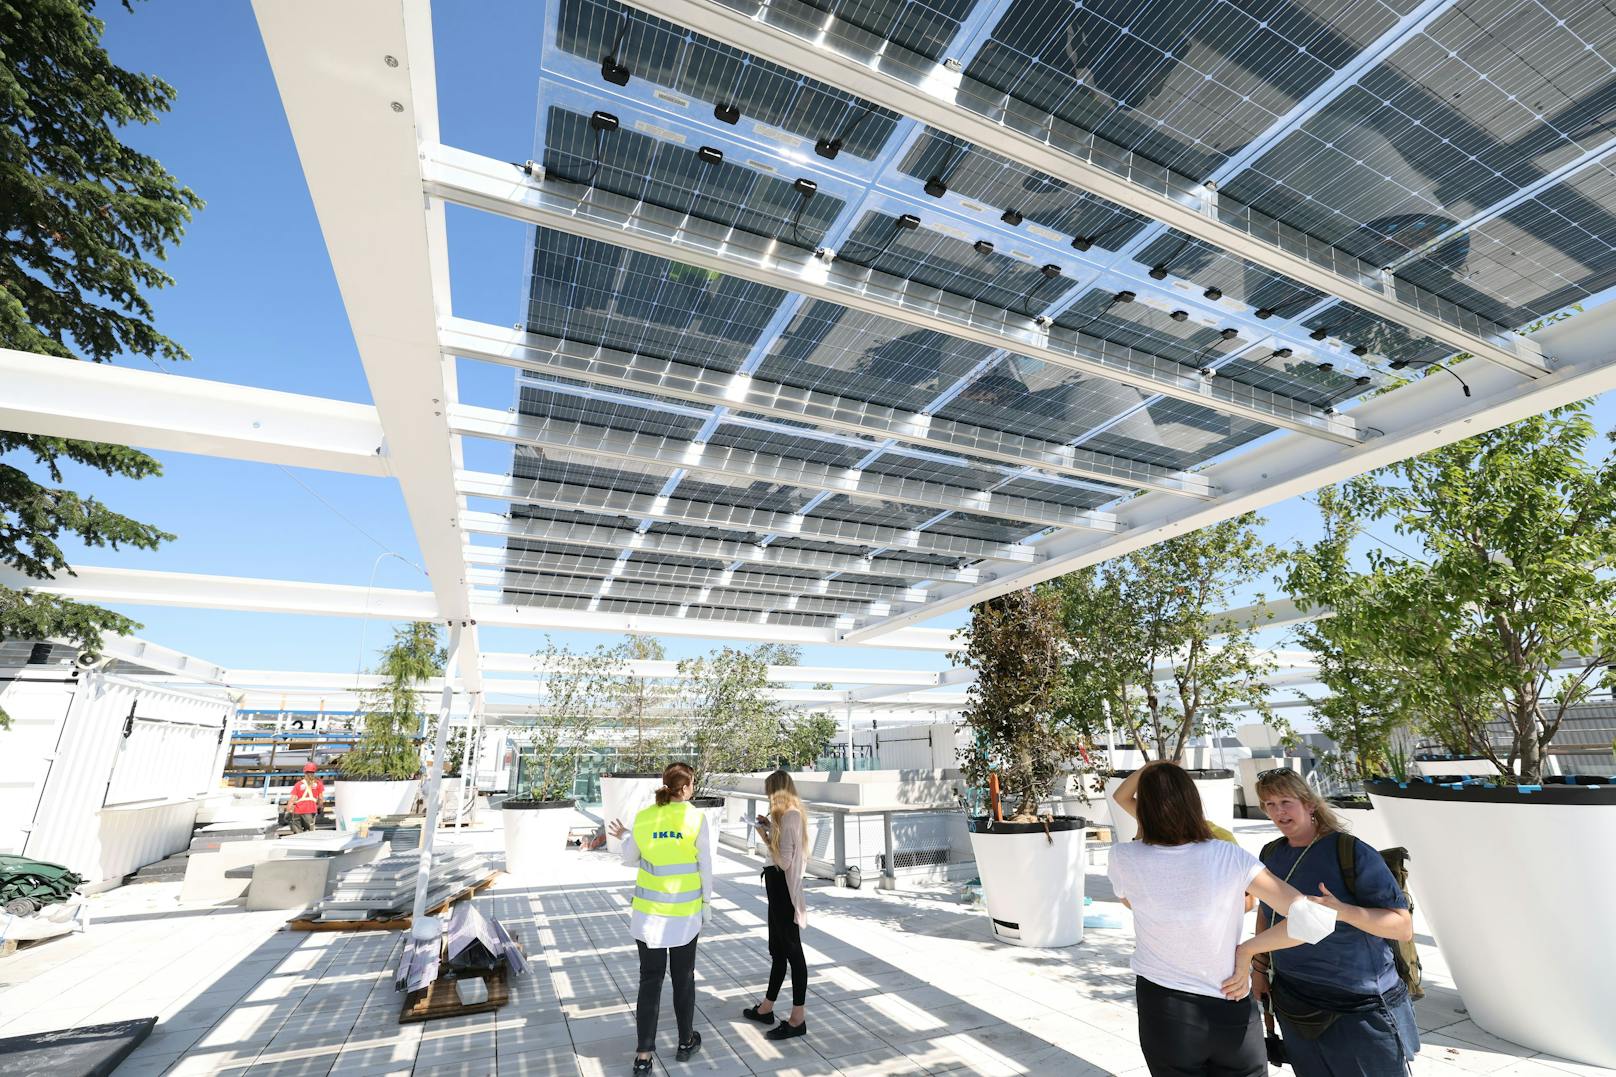 Nach dem Shopping im neuen Ikea Westbahnhof&nbsp;kann man sich am öffentlichen Dachpark unter Solarpanelen und schattigen Bäumen entspannen.